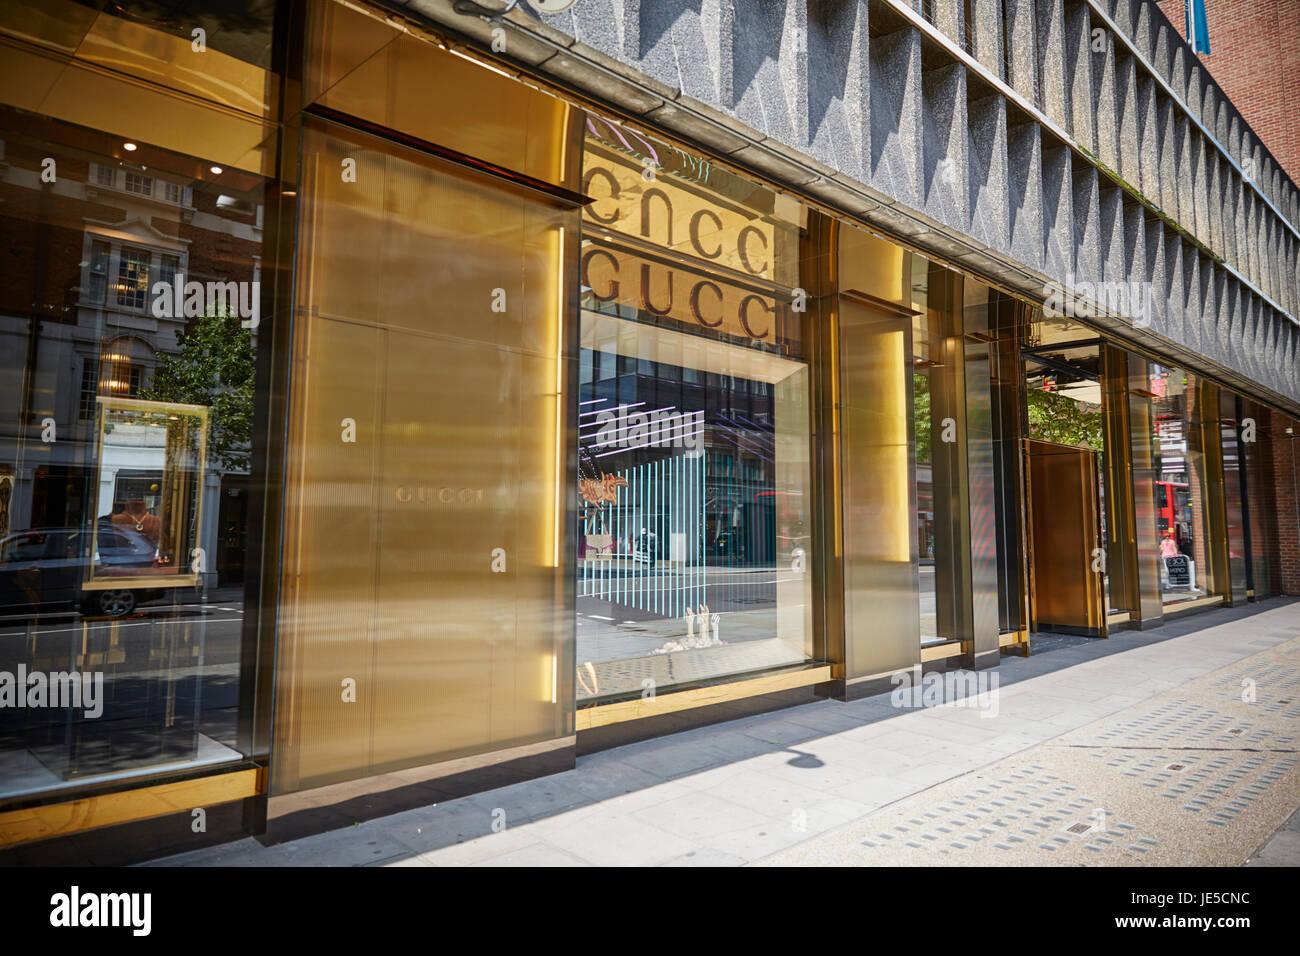 Gucci Store, London, UK Stock Photo - Alamy